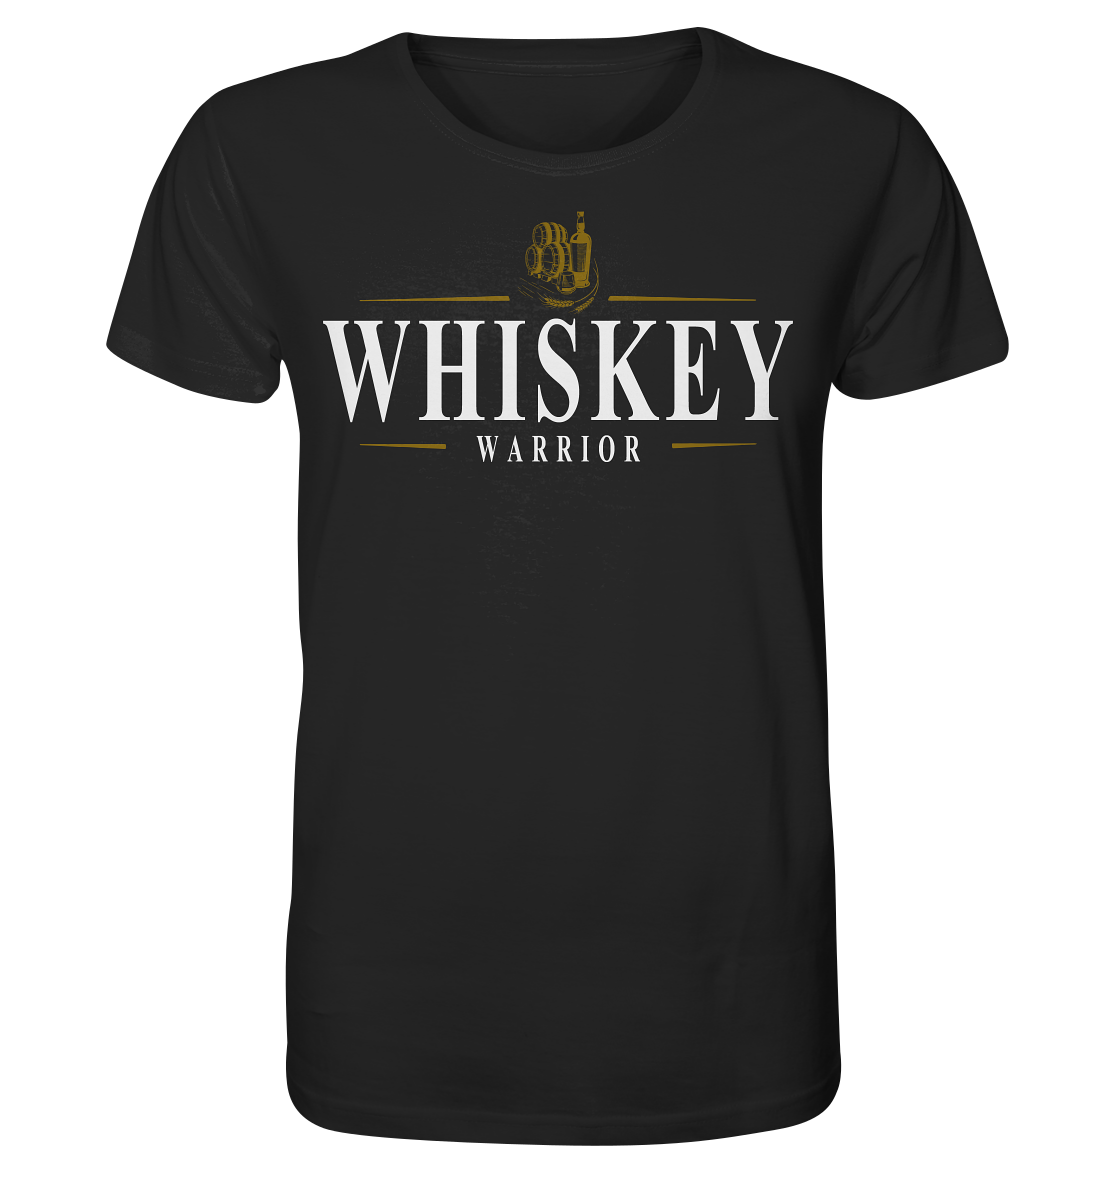 Whiskey "Warrior" - Organic Shirt